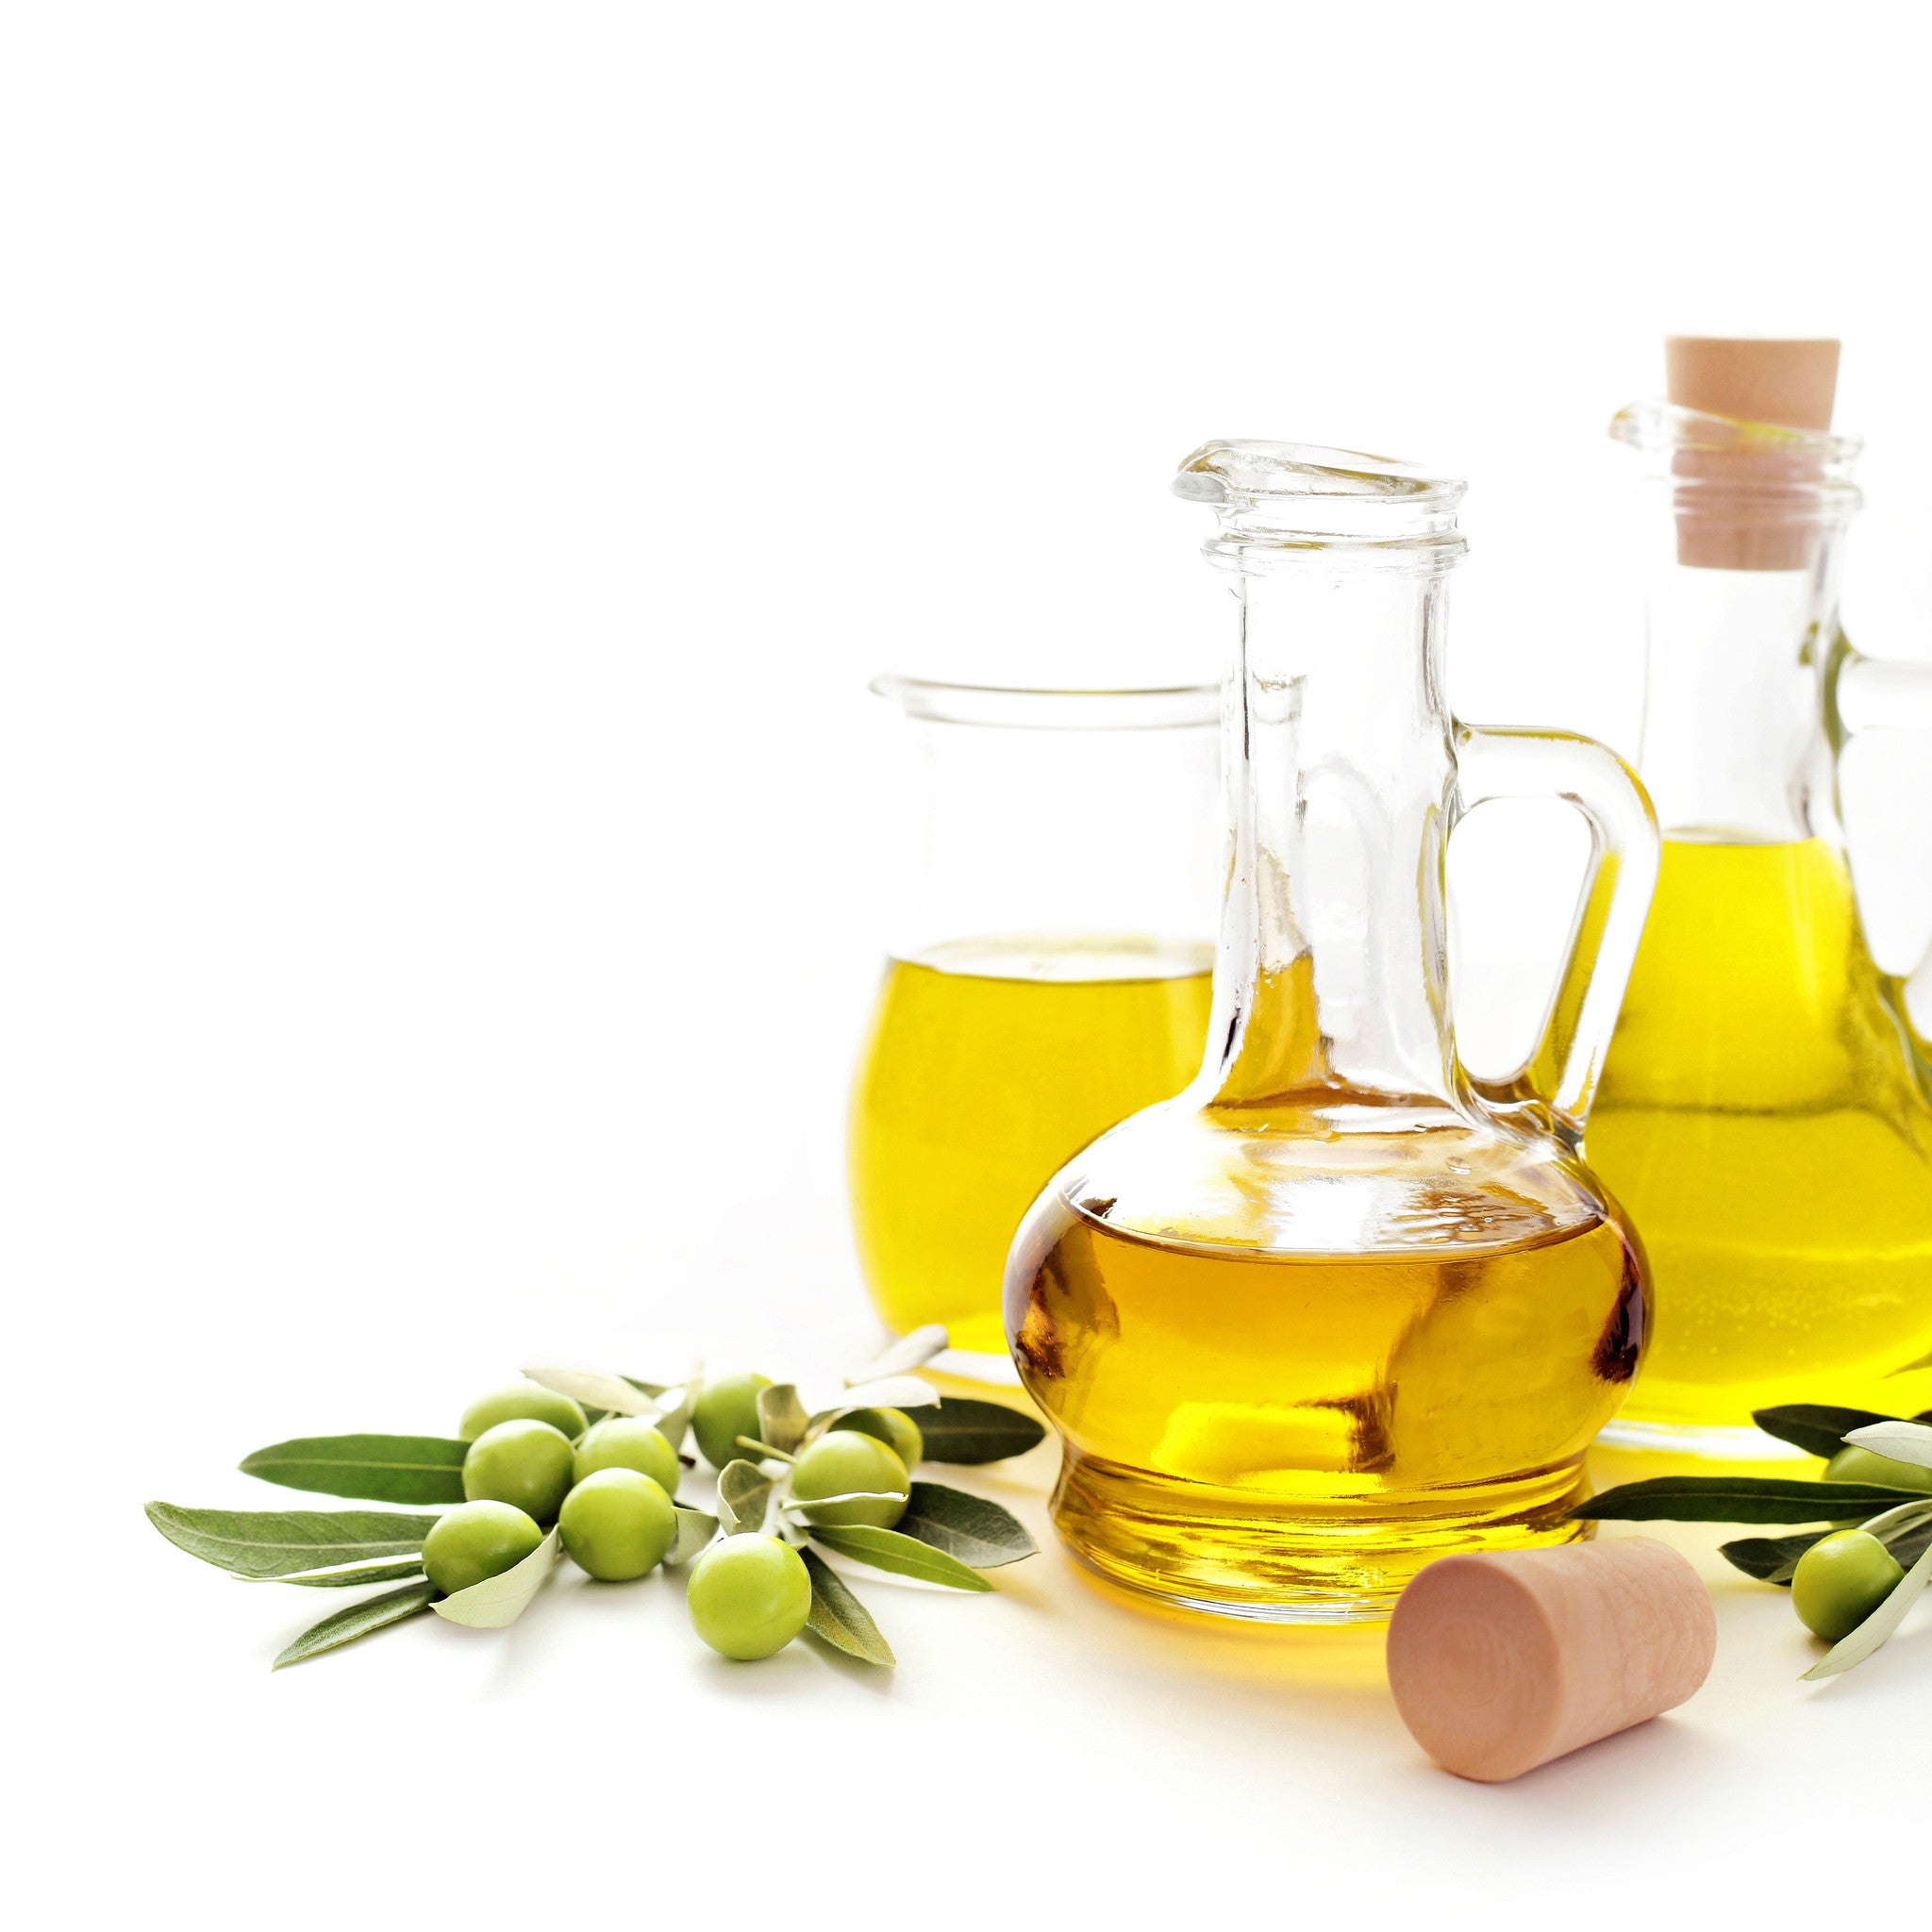 Afbeeldingsresultaat voor olive oil